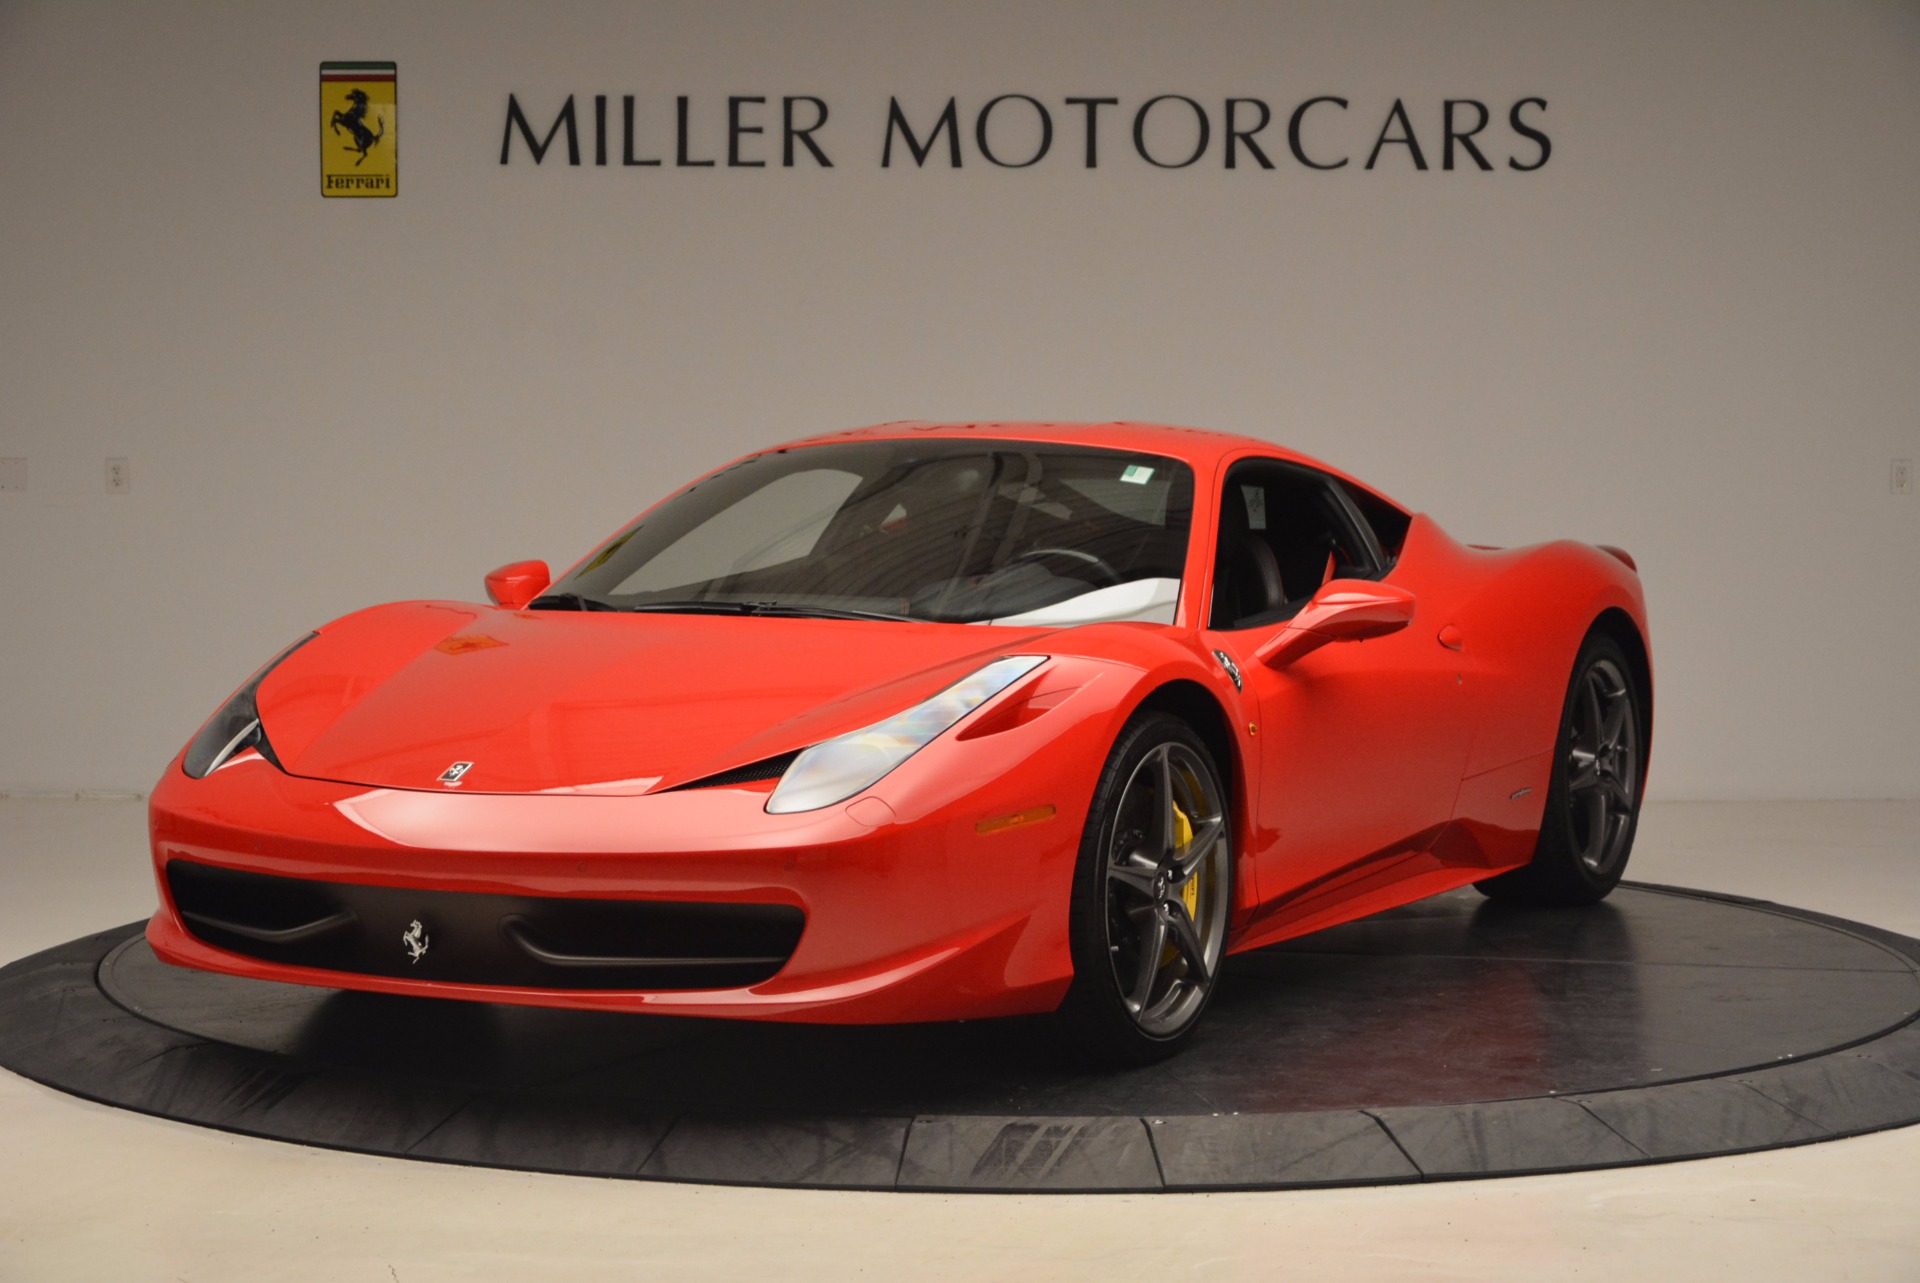 Pre Owned 2015 Ferrari 458 Italia For Sale Miller